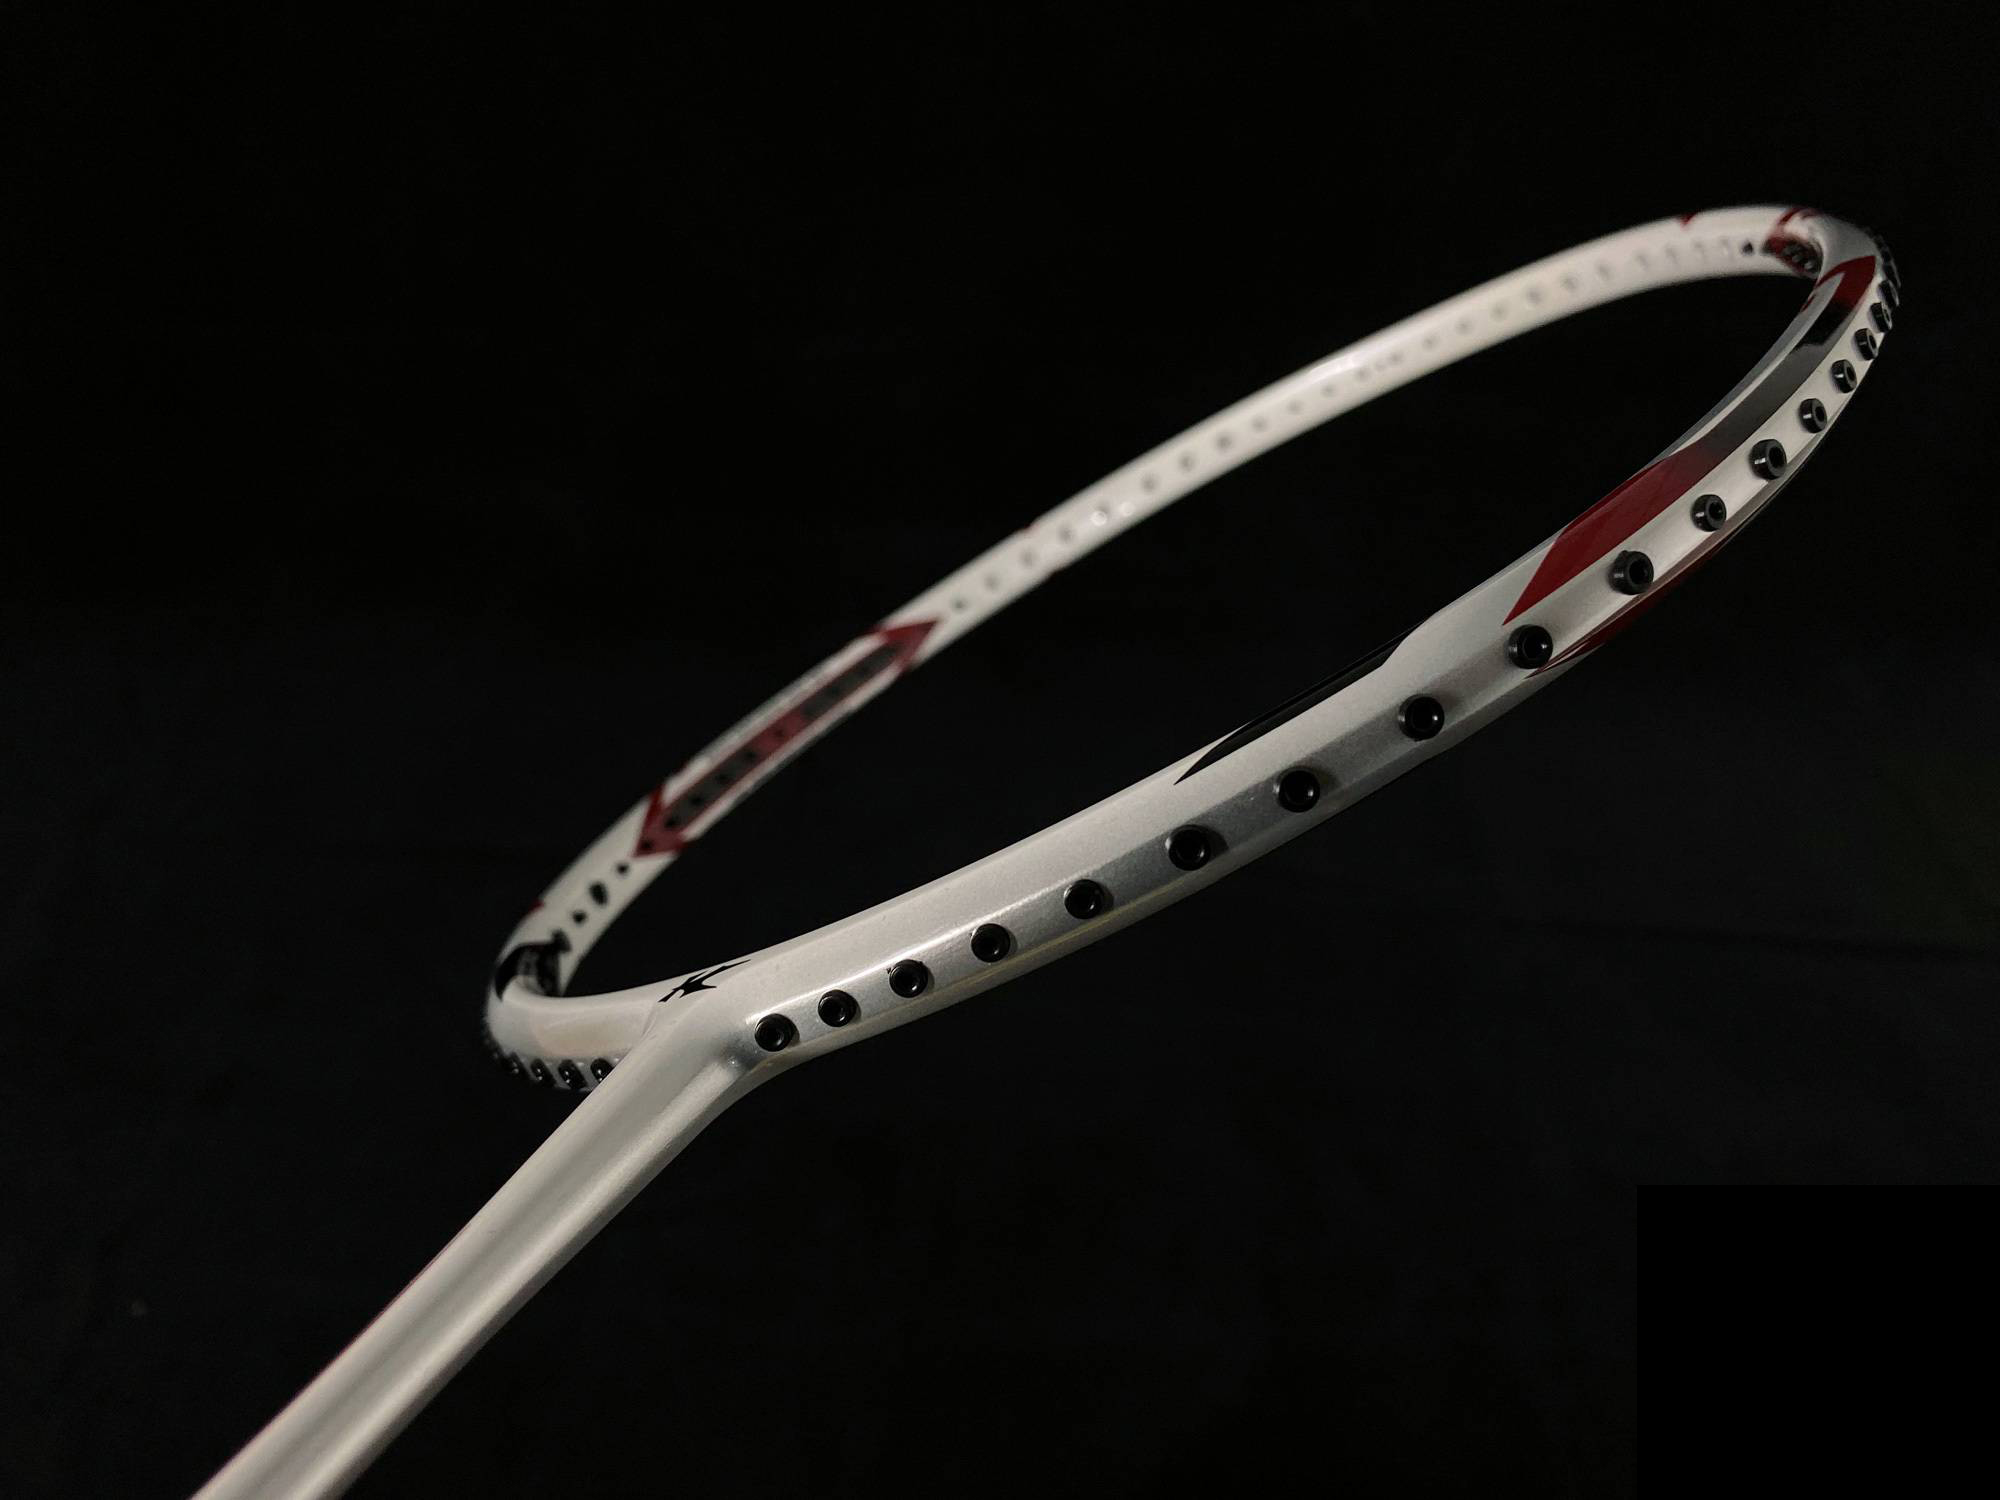 Khung và thân của vợt Kason C7/F9